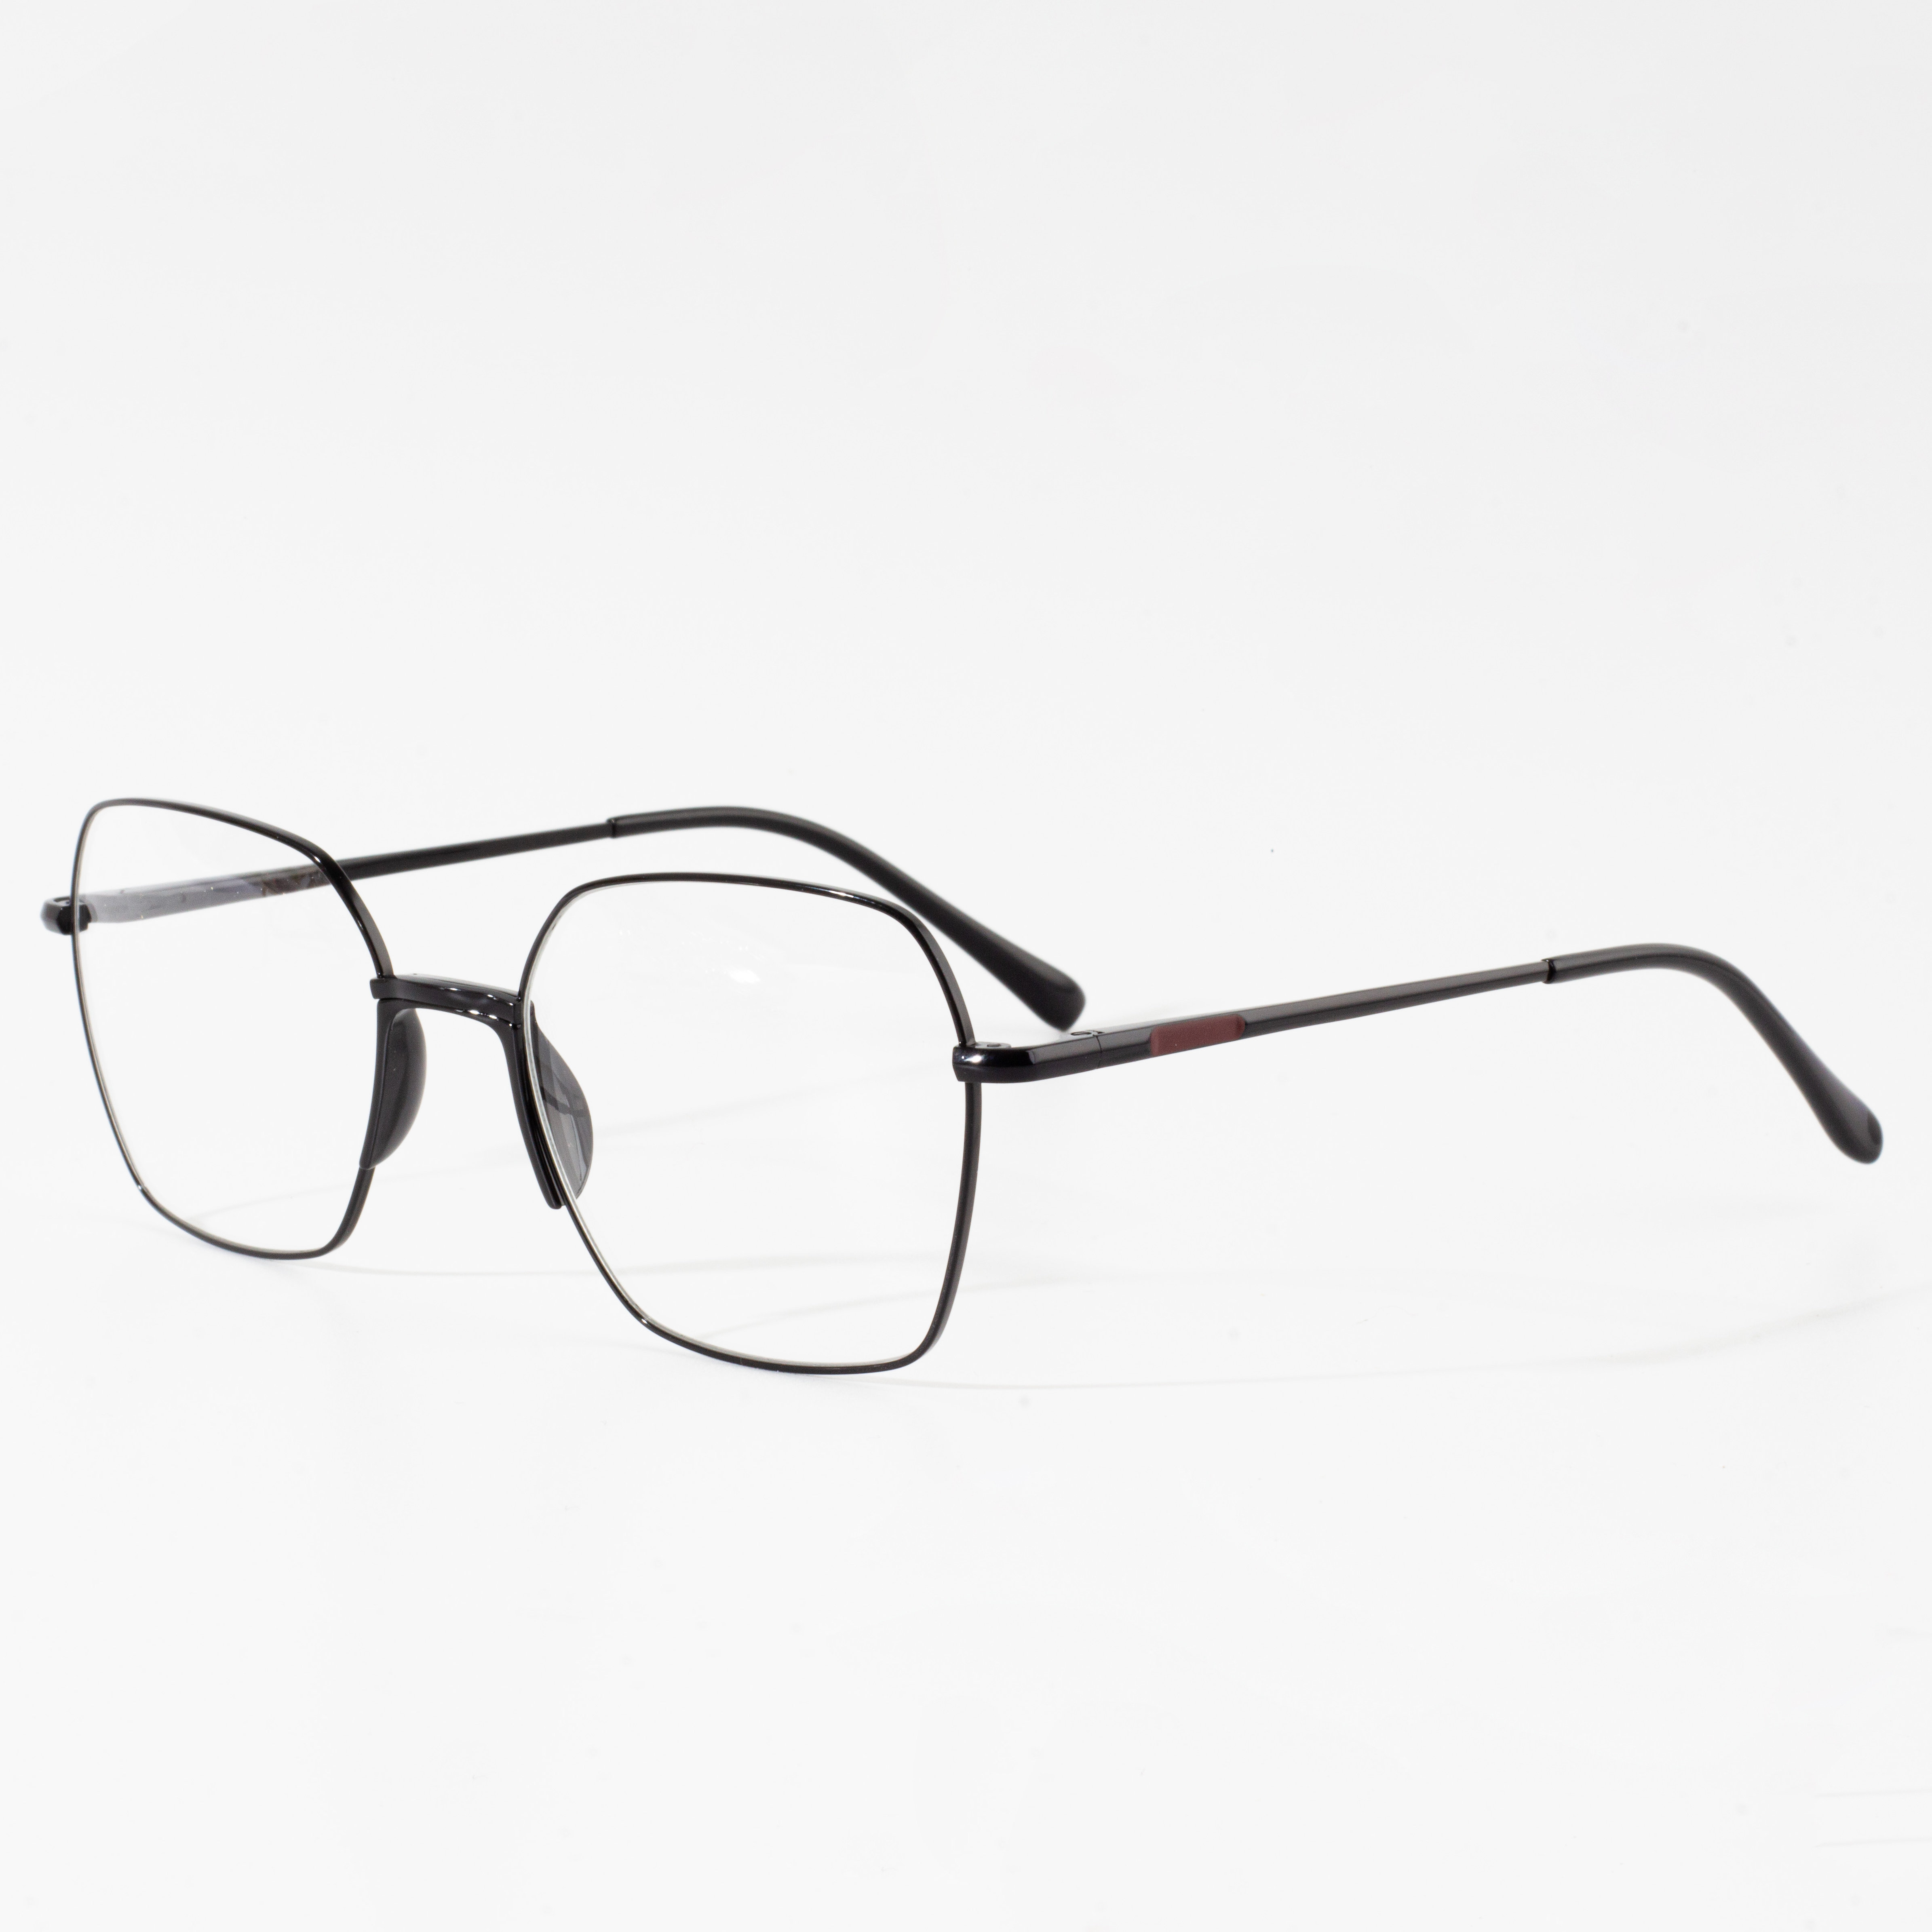 lag luam wholesale classic optical eyewear